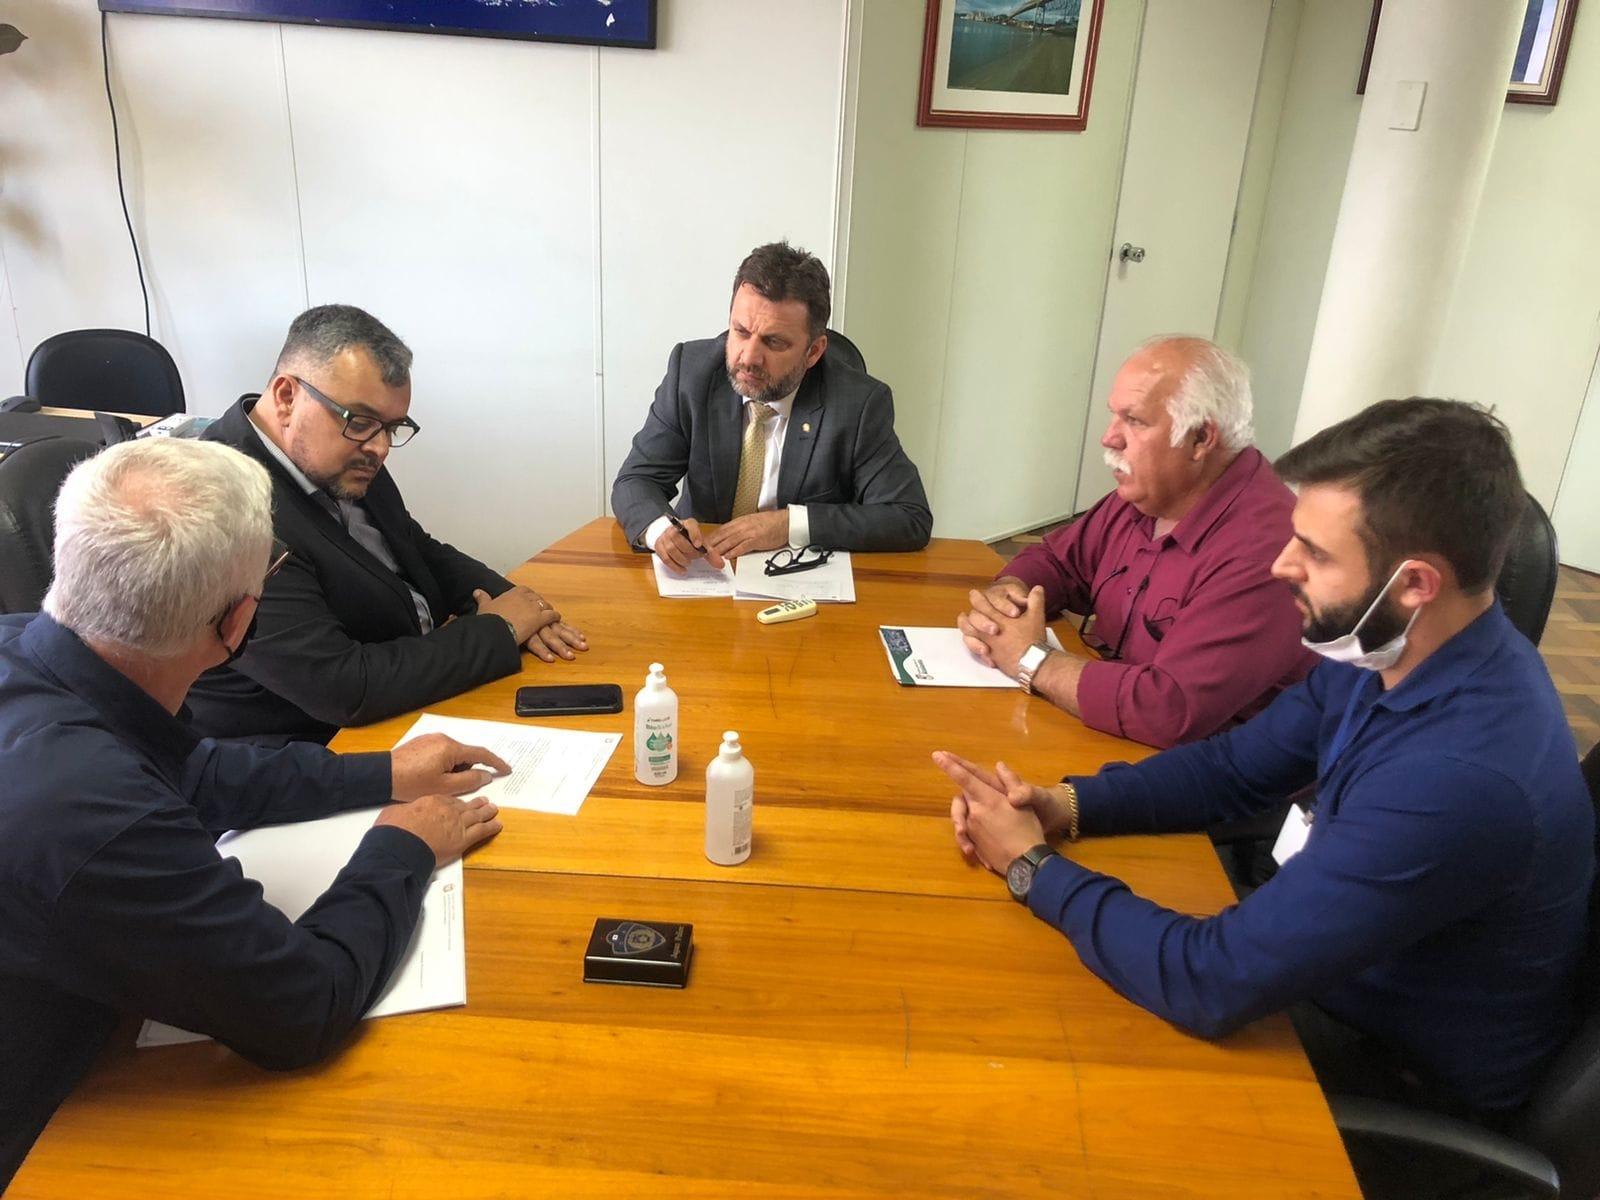 Governo do Estado garante lançar edital para obras de ligação asfáltica entre Ituporanga e Atalanta até fevereiro